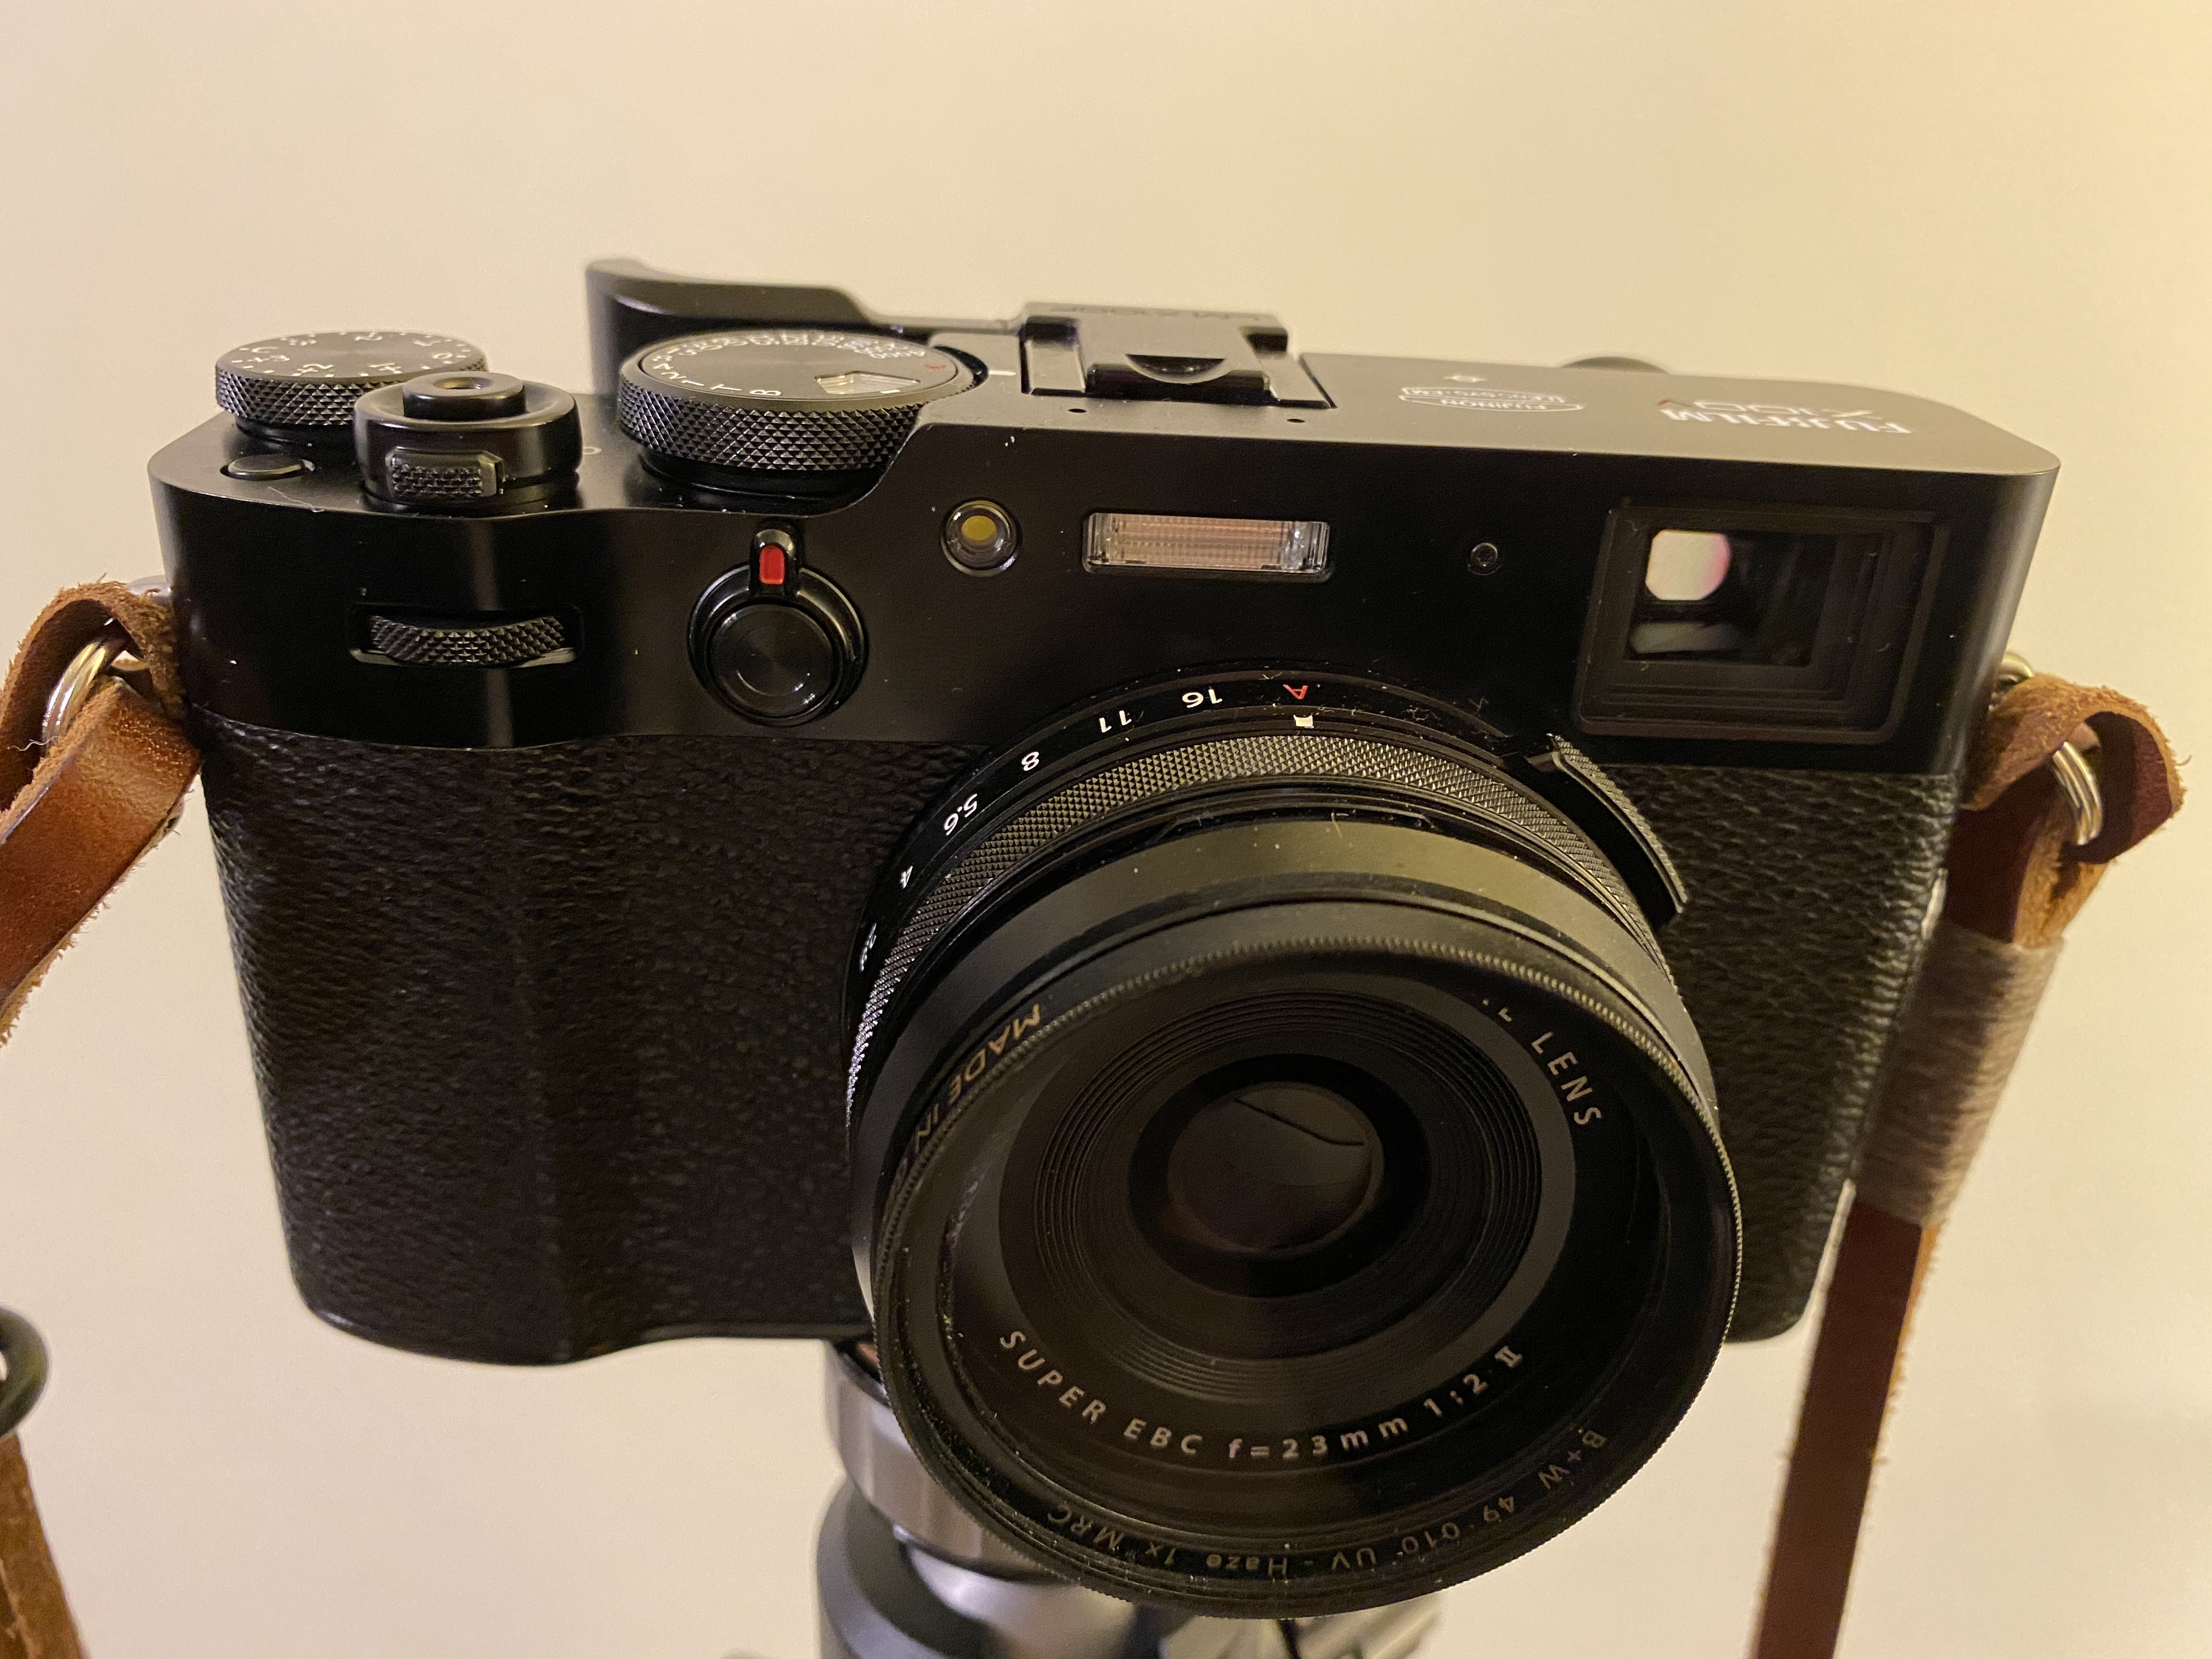 A Fujifilm X100V camera